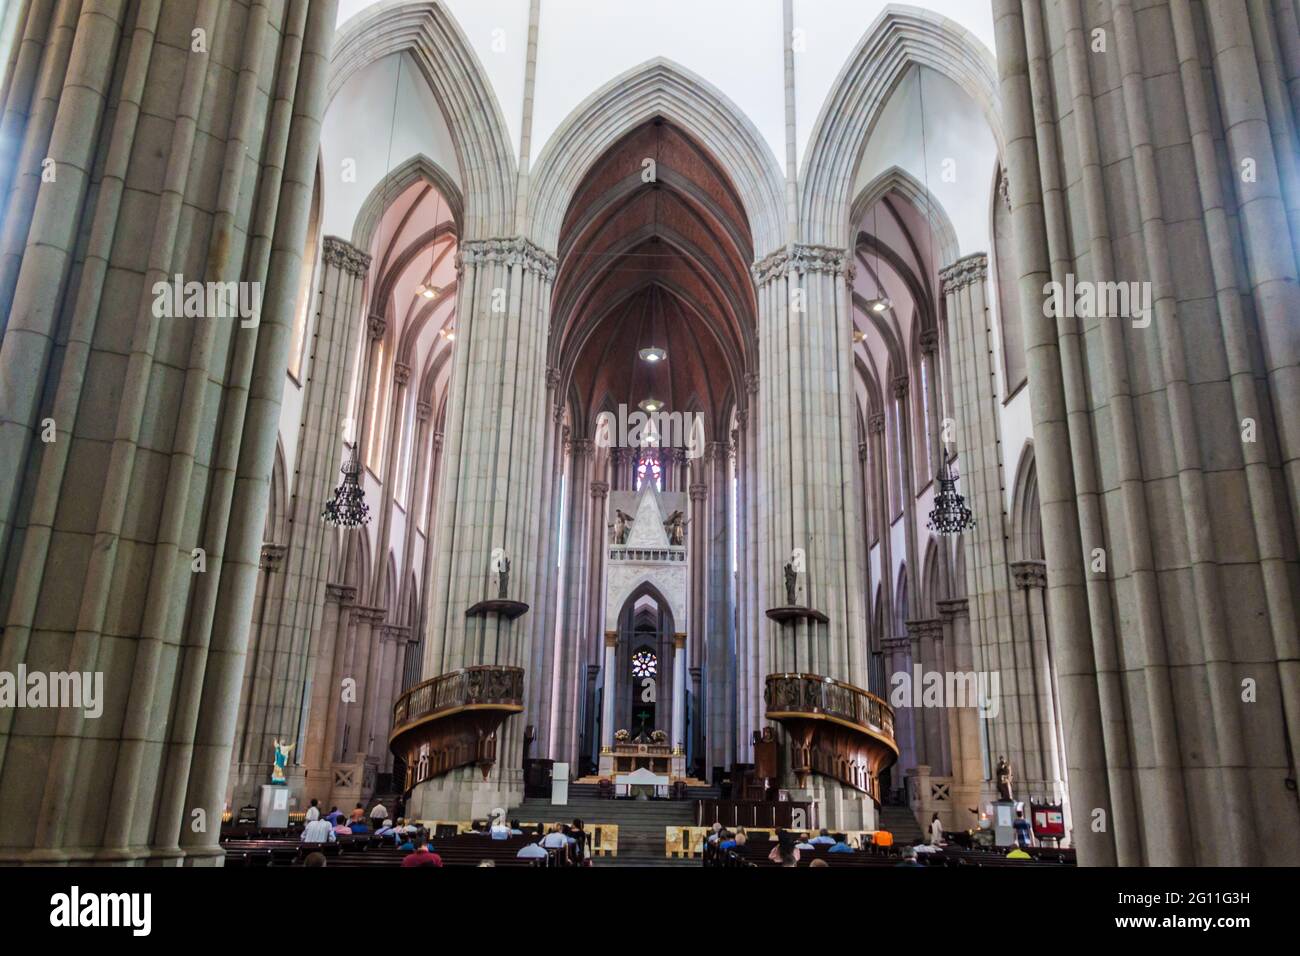 SAN PAOLO, BRASILE - 3 FEBBRAIO 2015: Interno della cattedrale di Catedral da se a San Paolo, Brasile Foto Stock